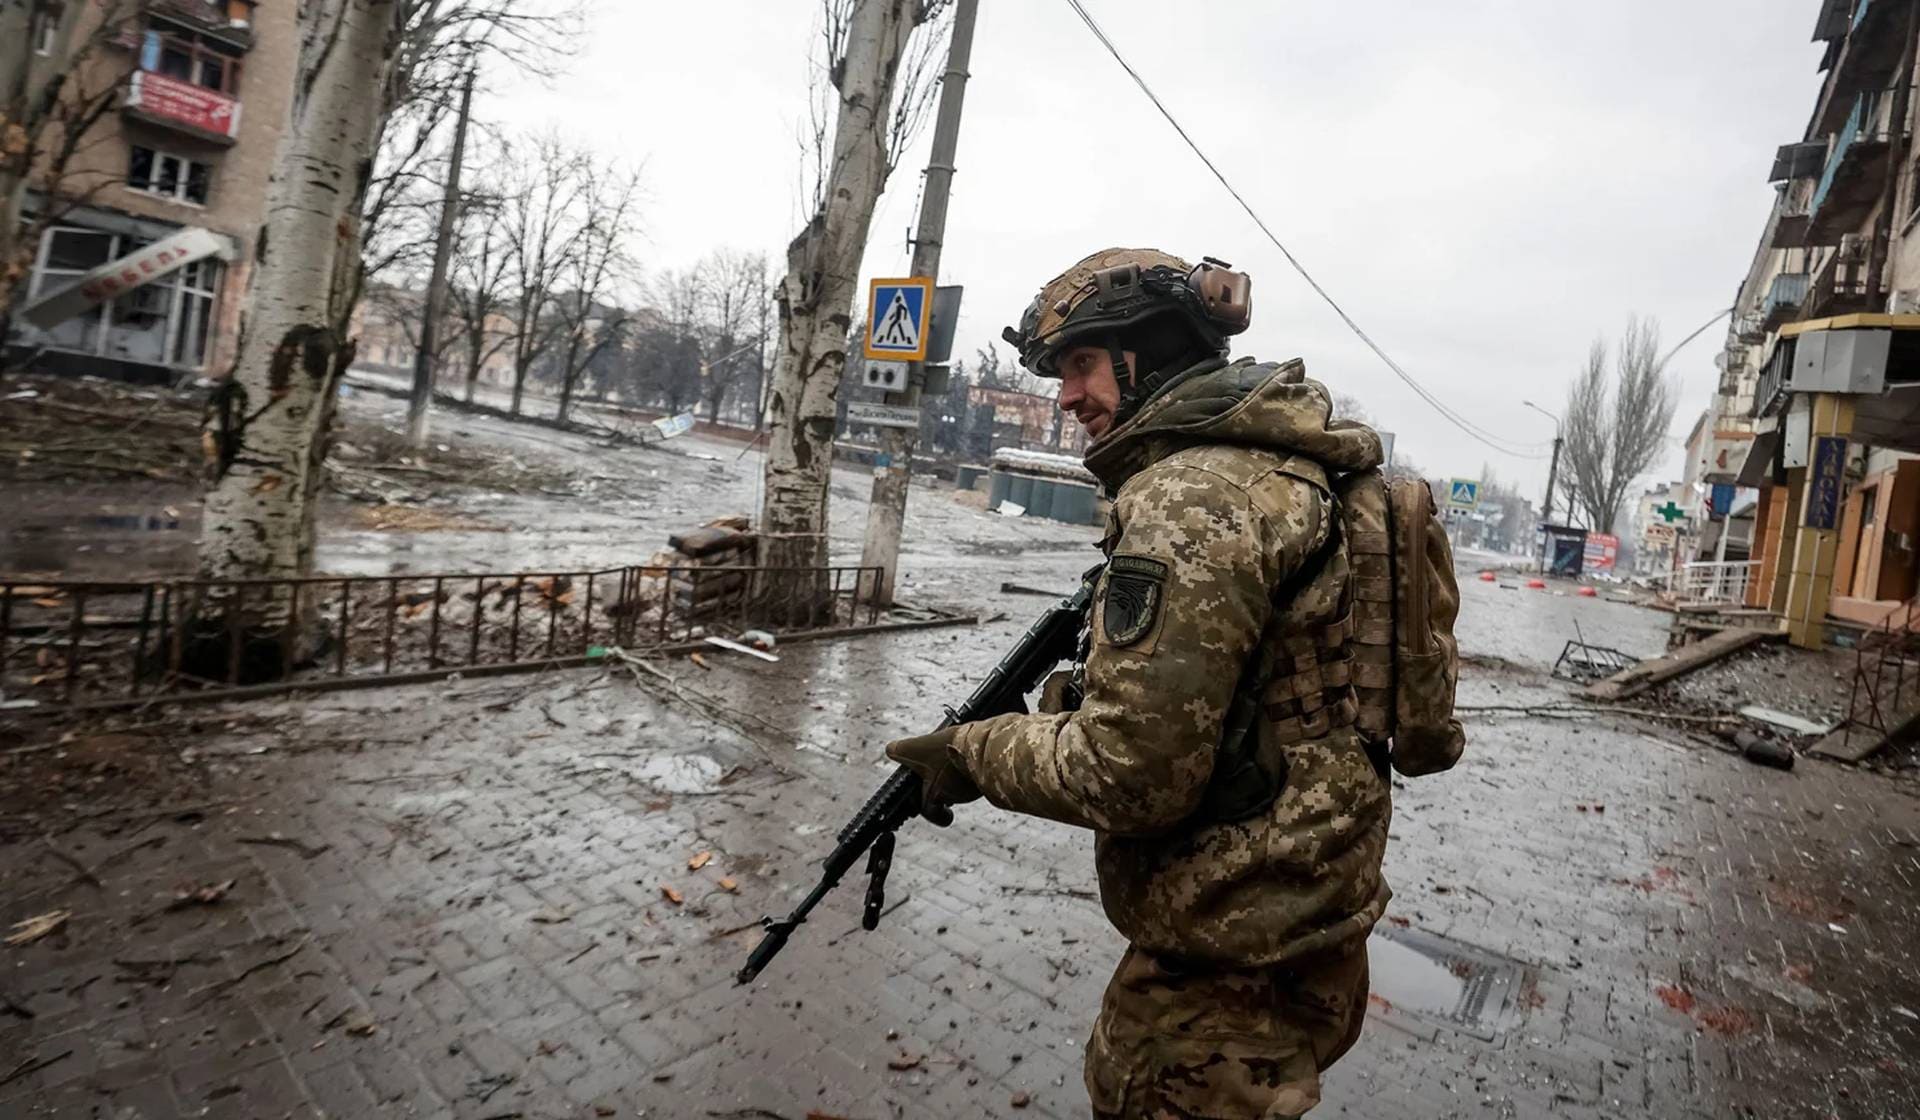 Ukrainian service members on an empty street in the frontline city of Bakhmut